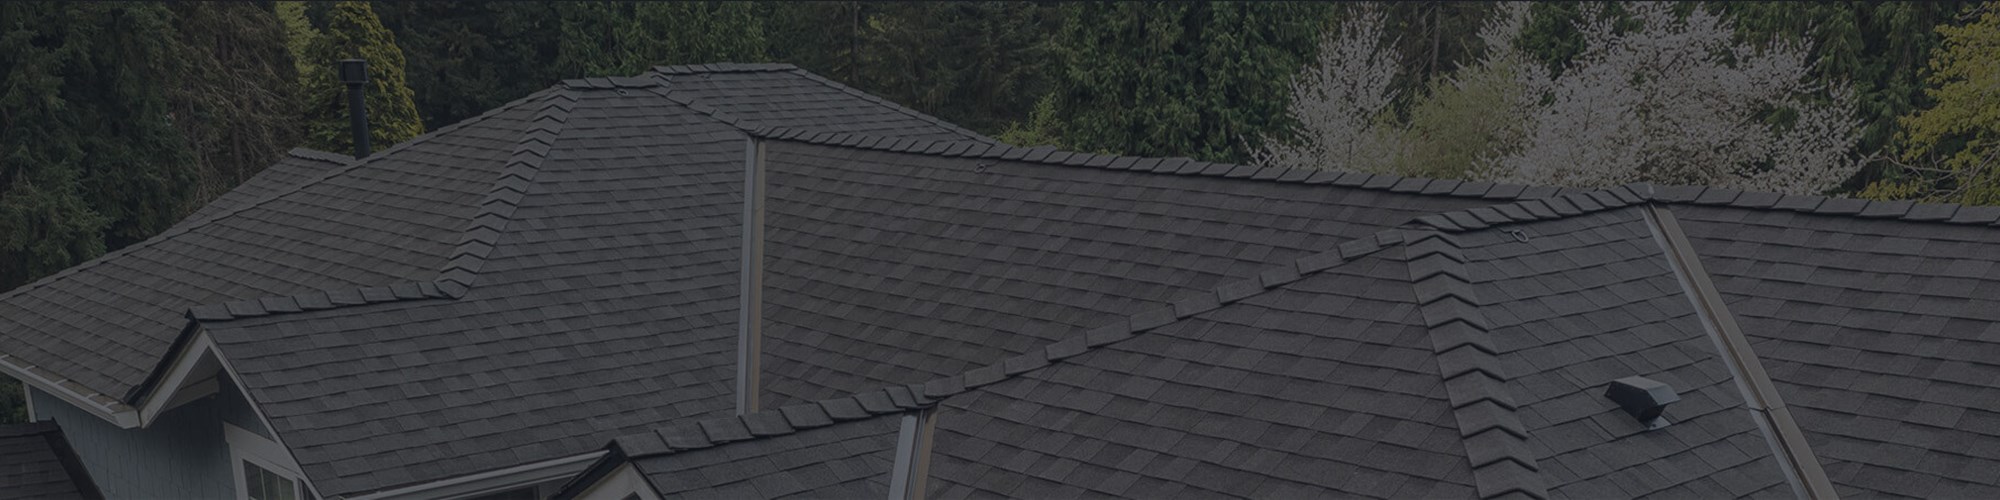 Roof financing in Seattle